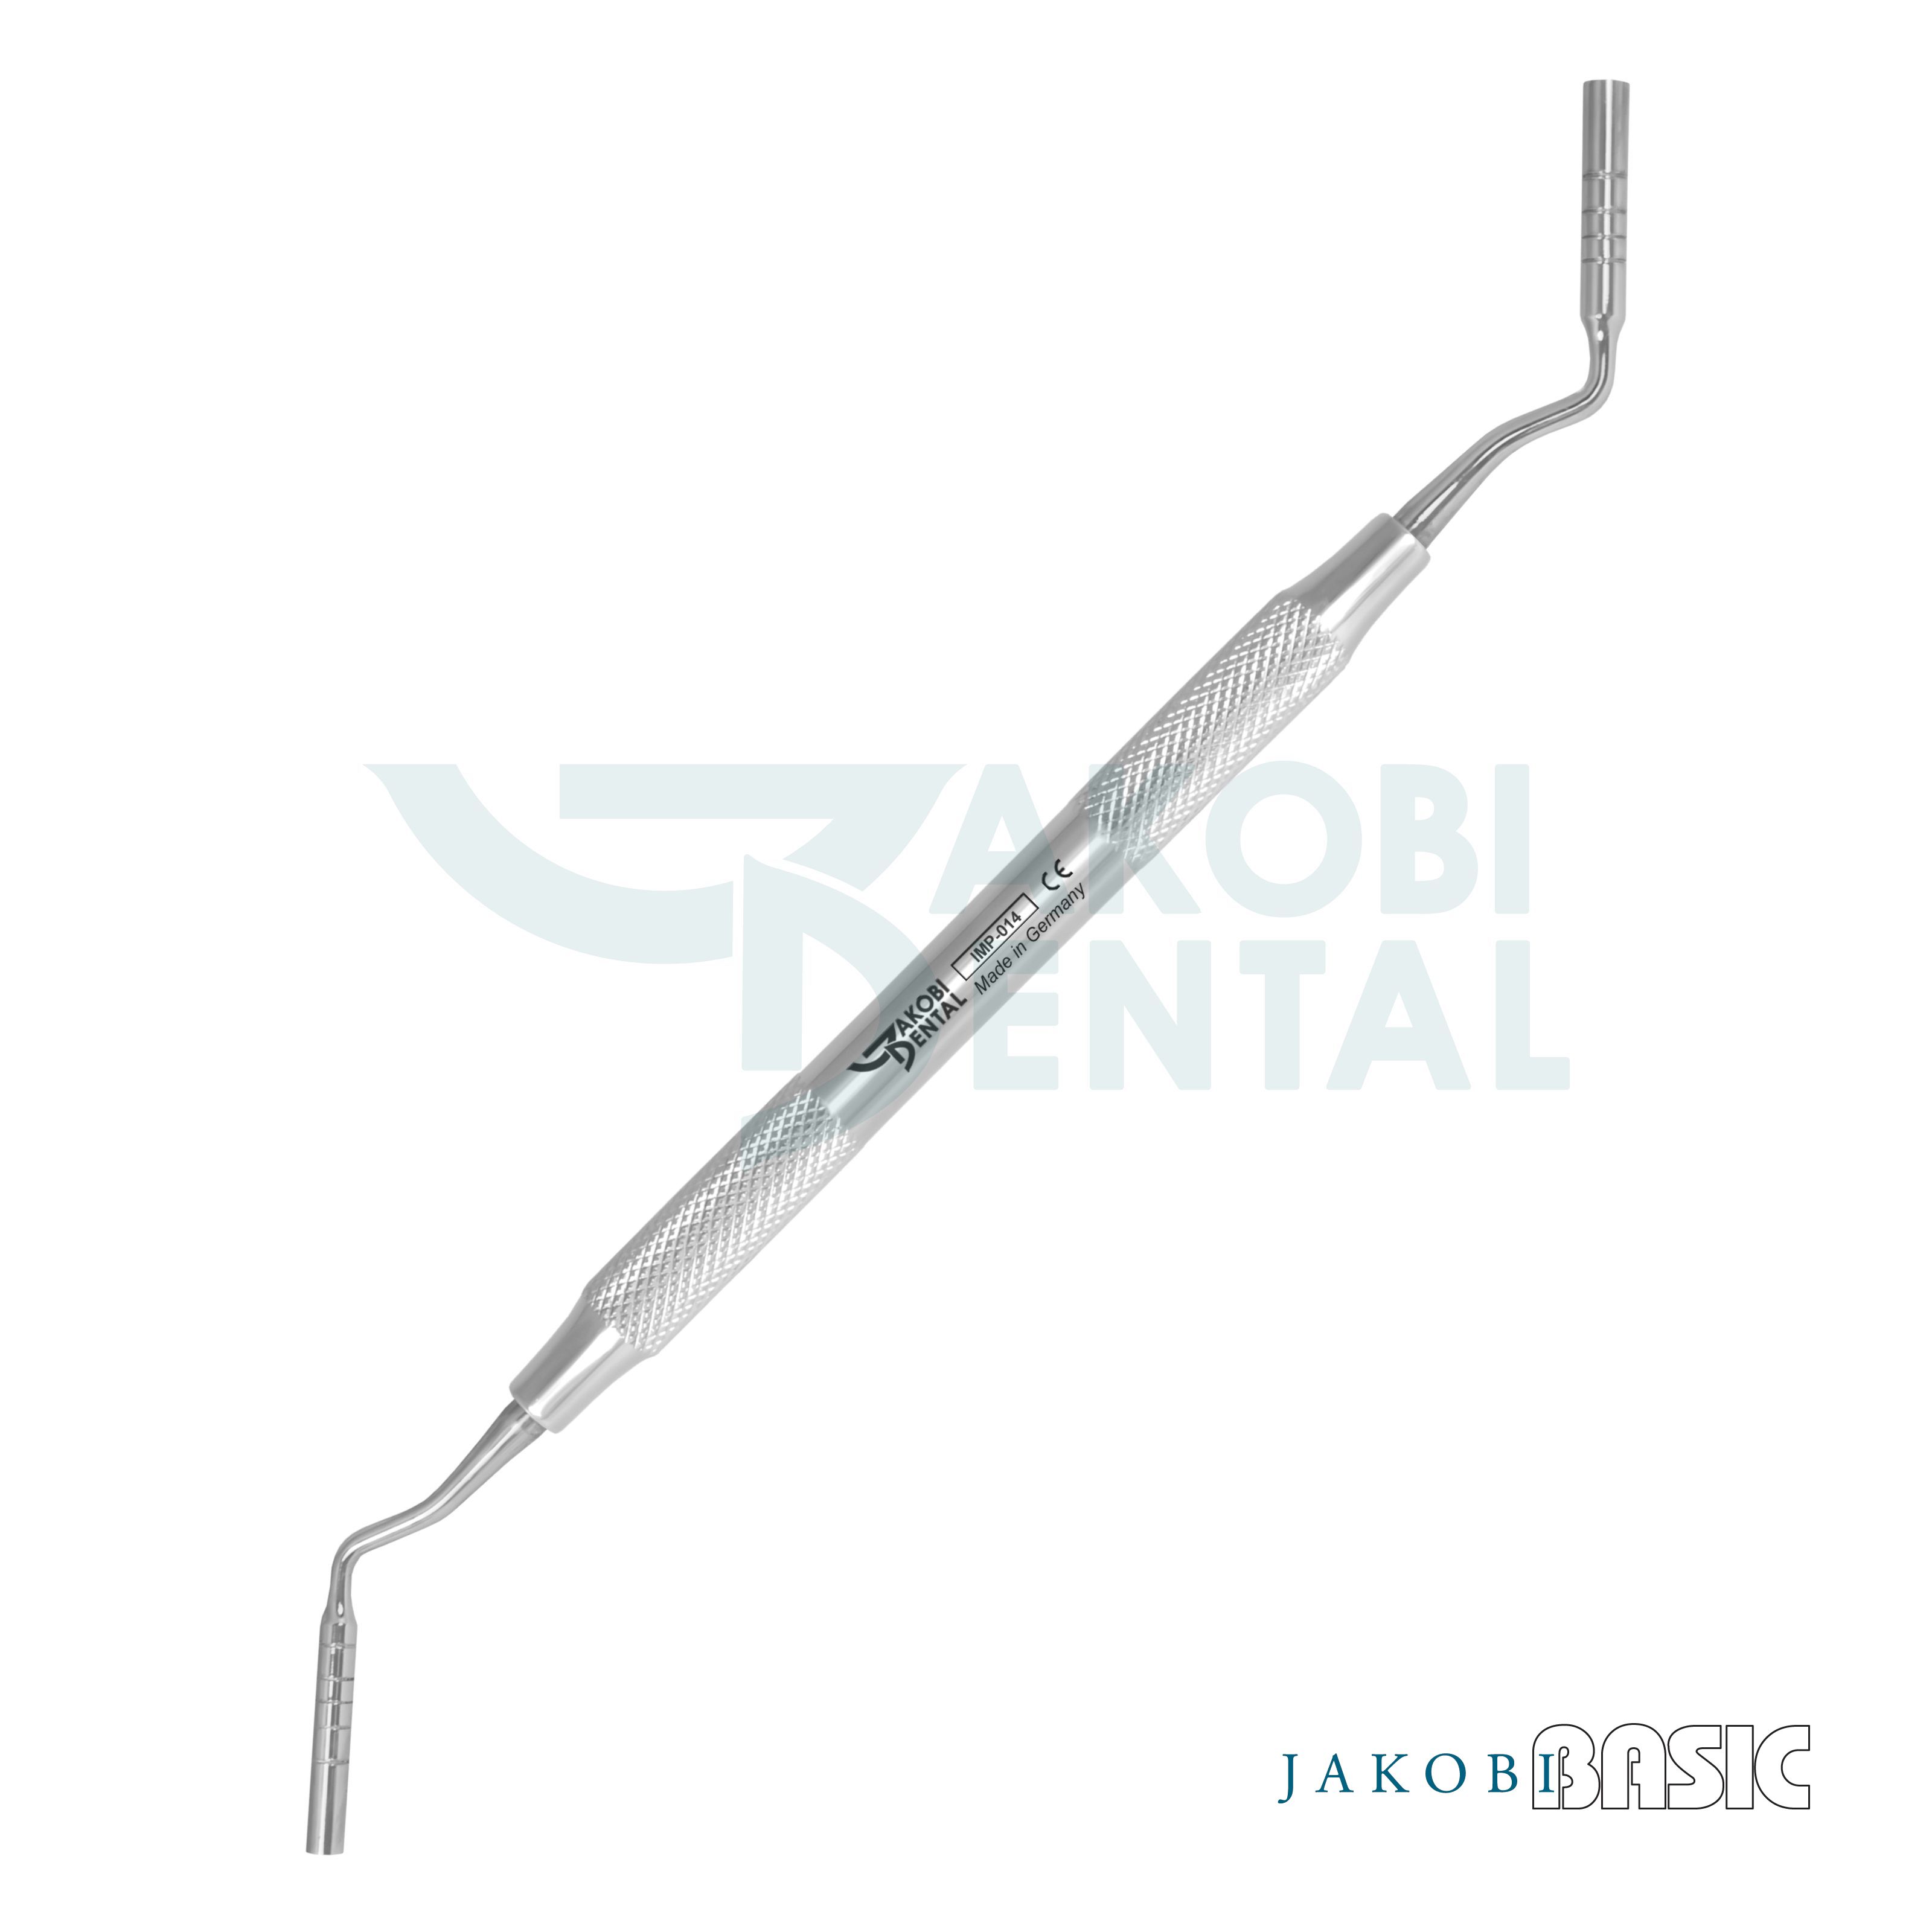 Implant. Compactor, Ø 3.3/4.0mm, depth markers, JakobiBasic handle # 4